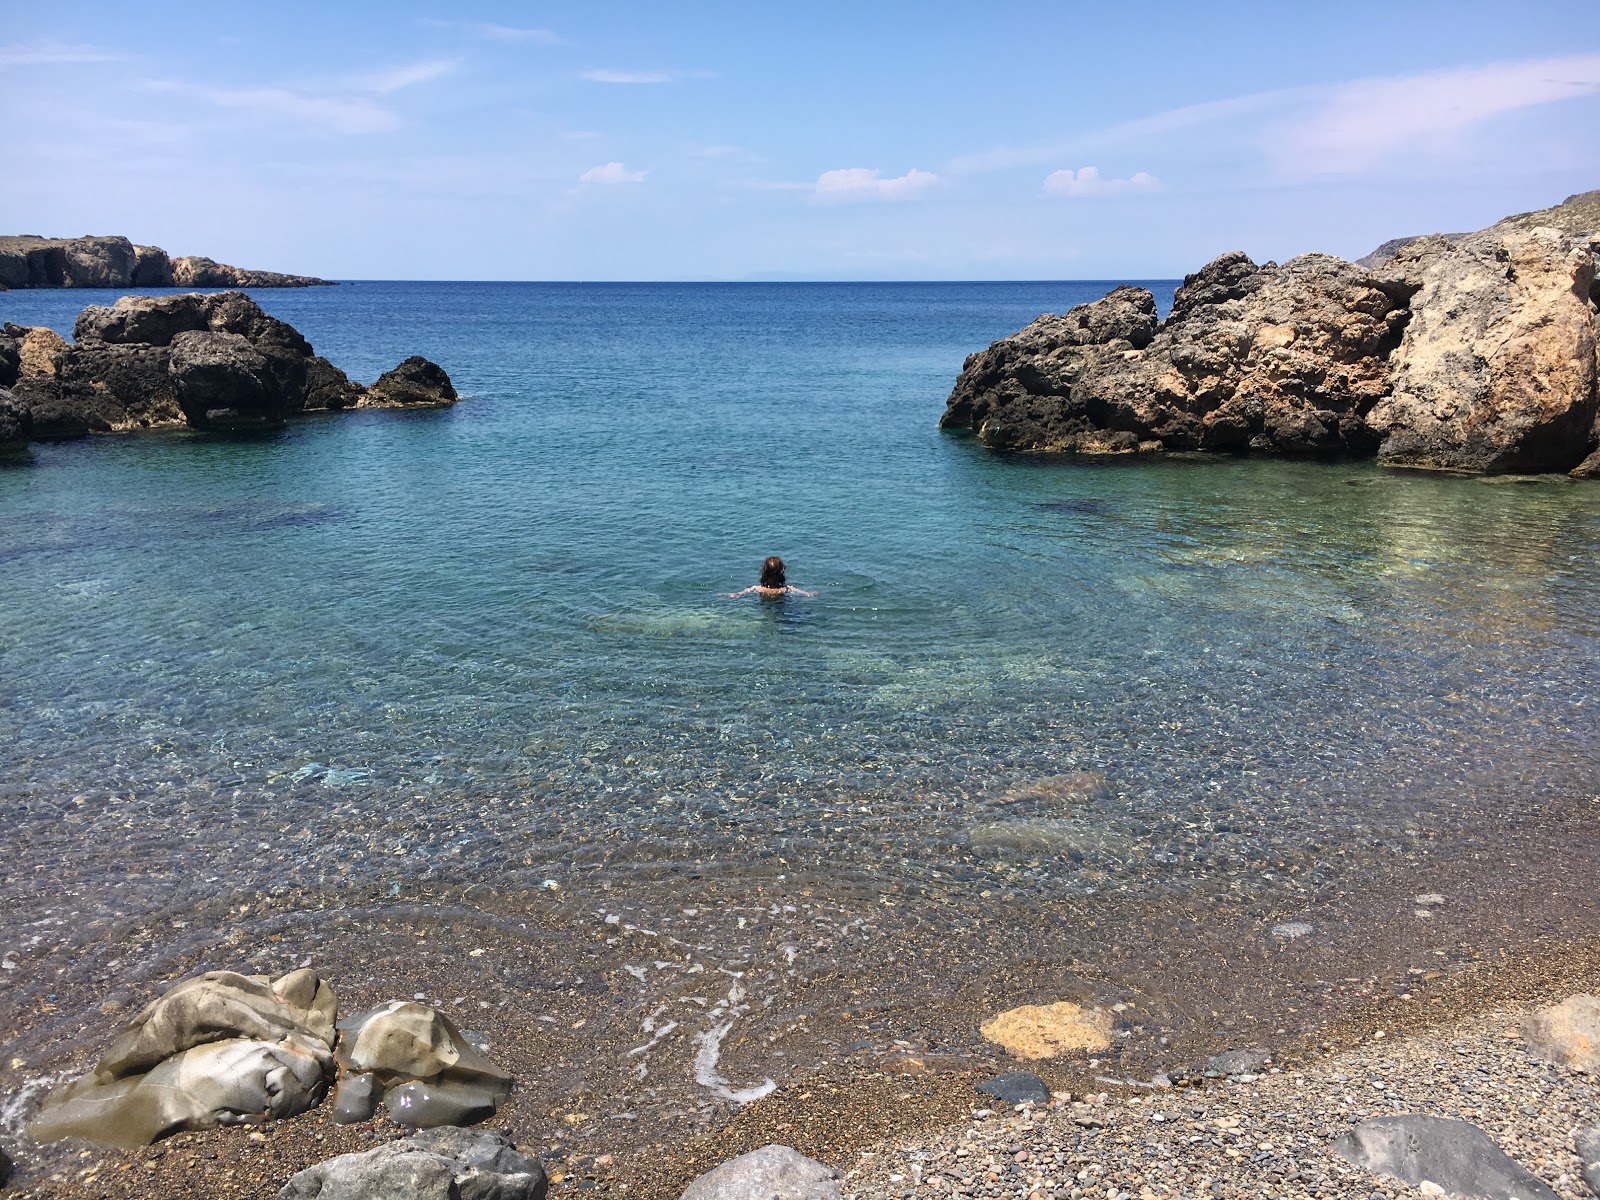 Fotografie cu Limnaria beach cu o suprafață de pietre